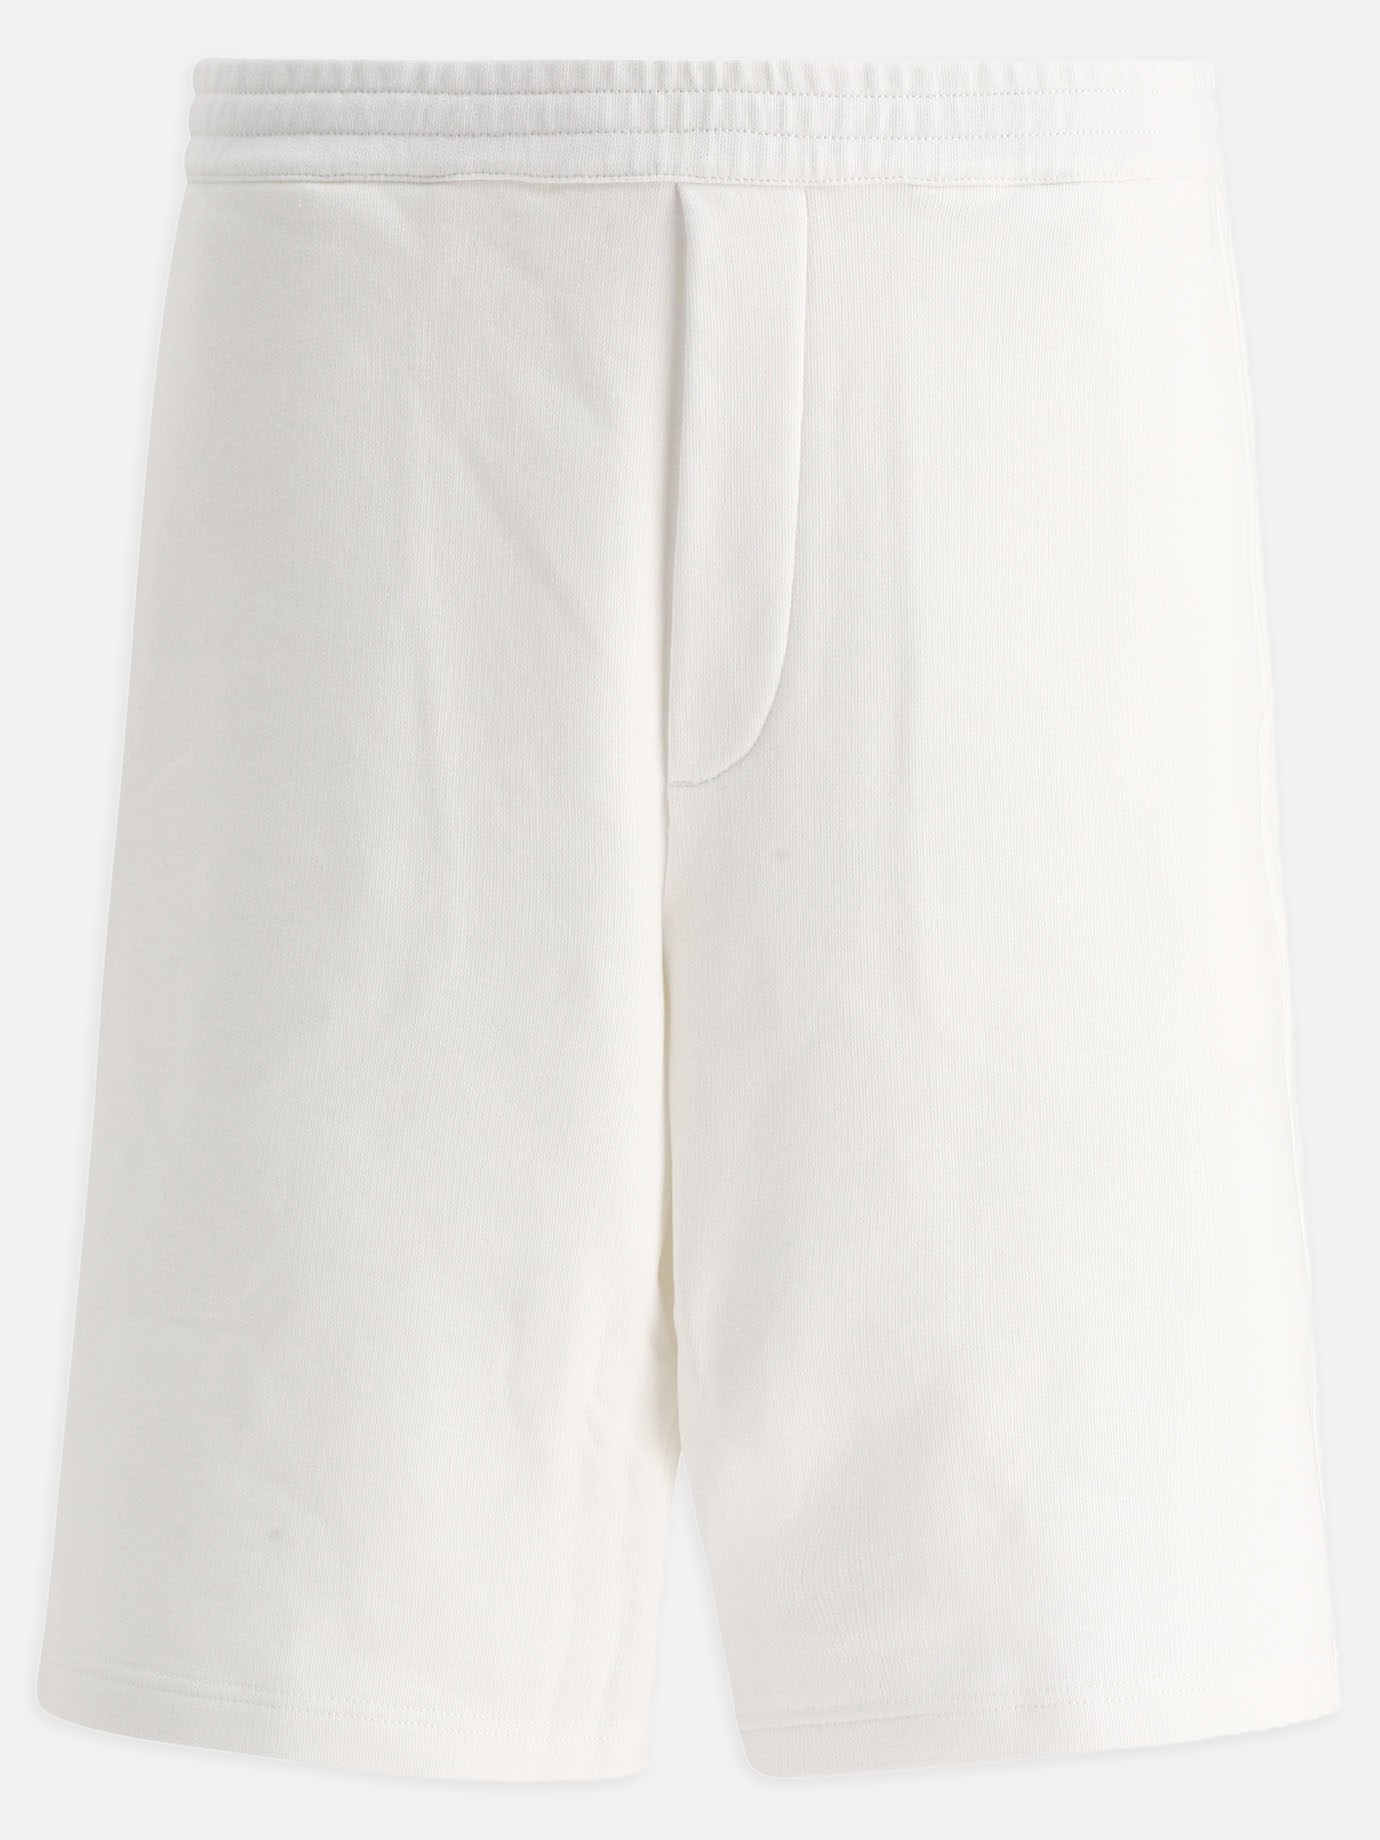 Sunspel Vintage Cellular White Classic Shorts 100% Cotton 